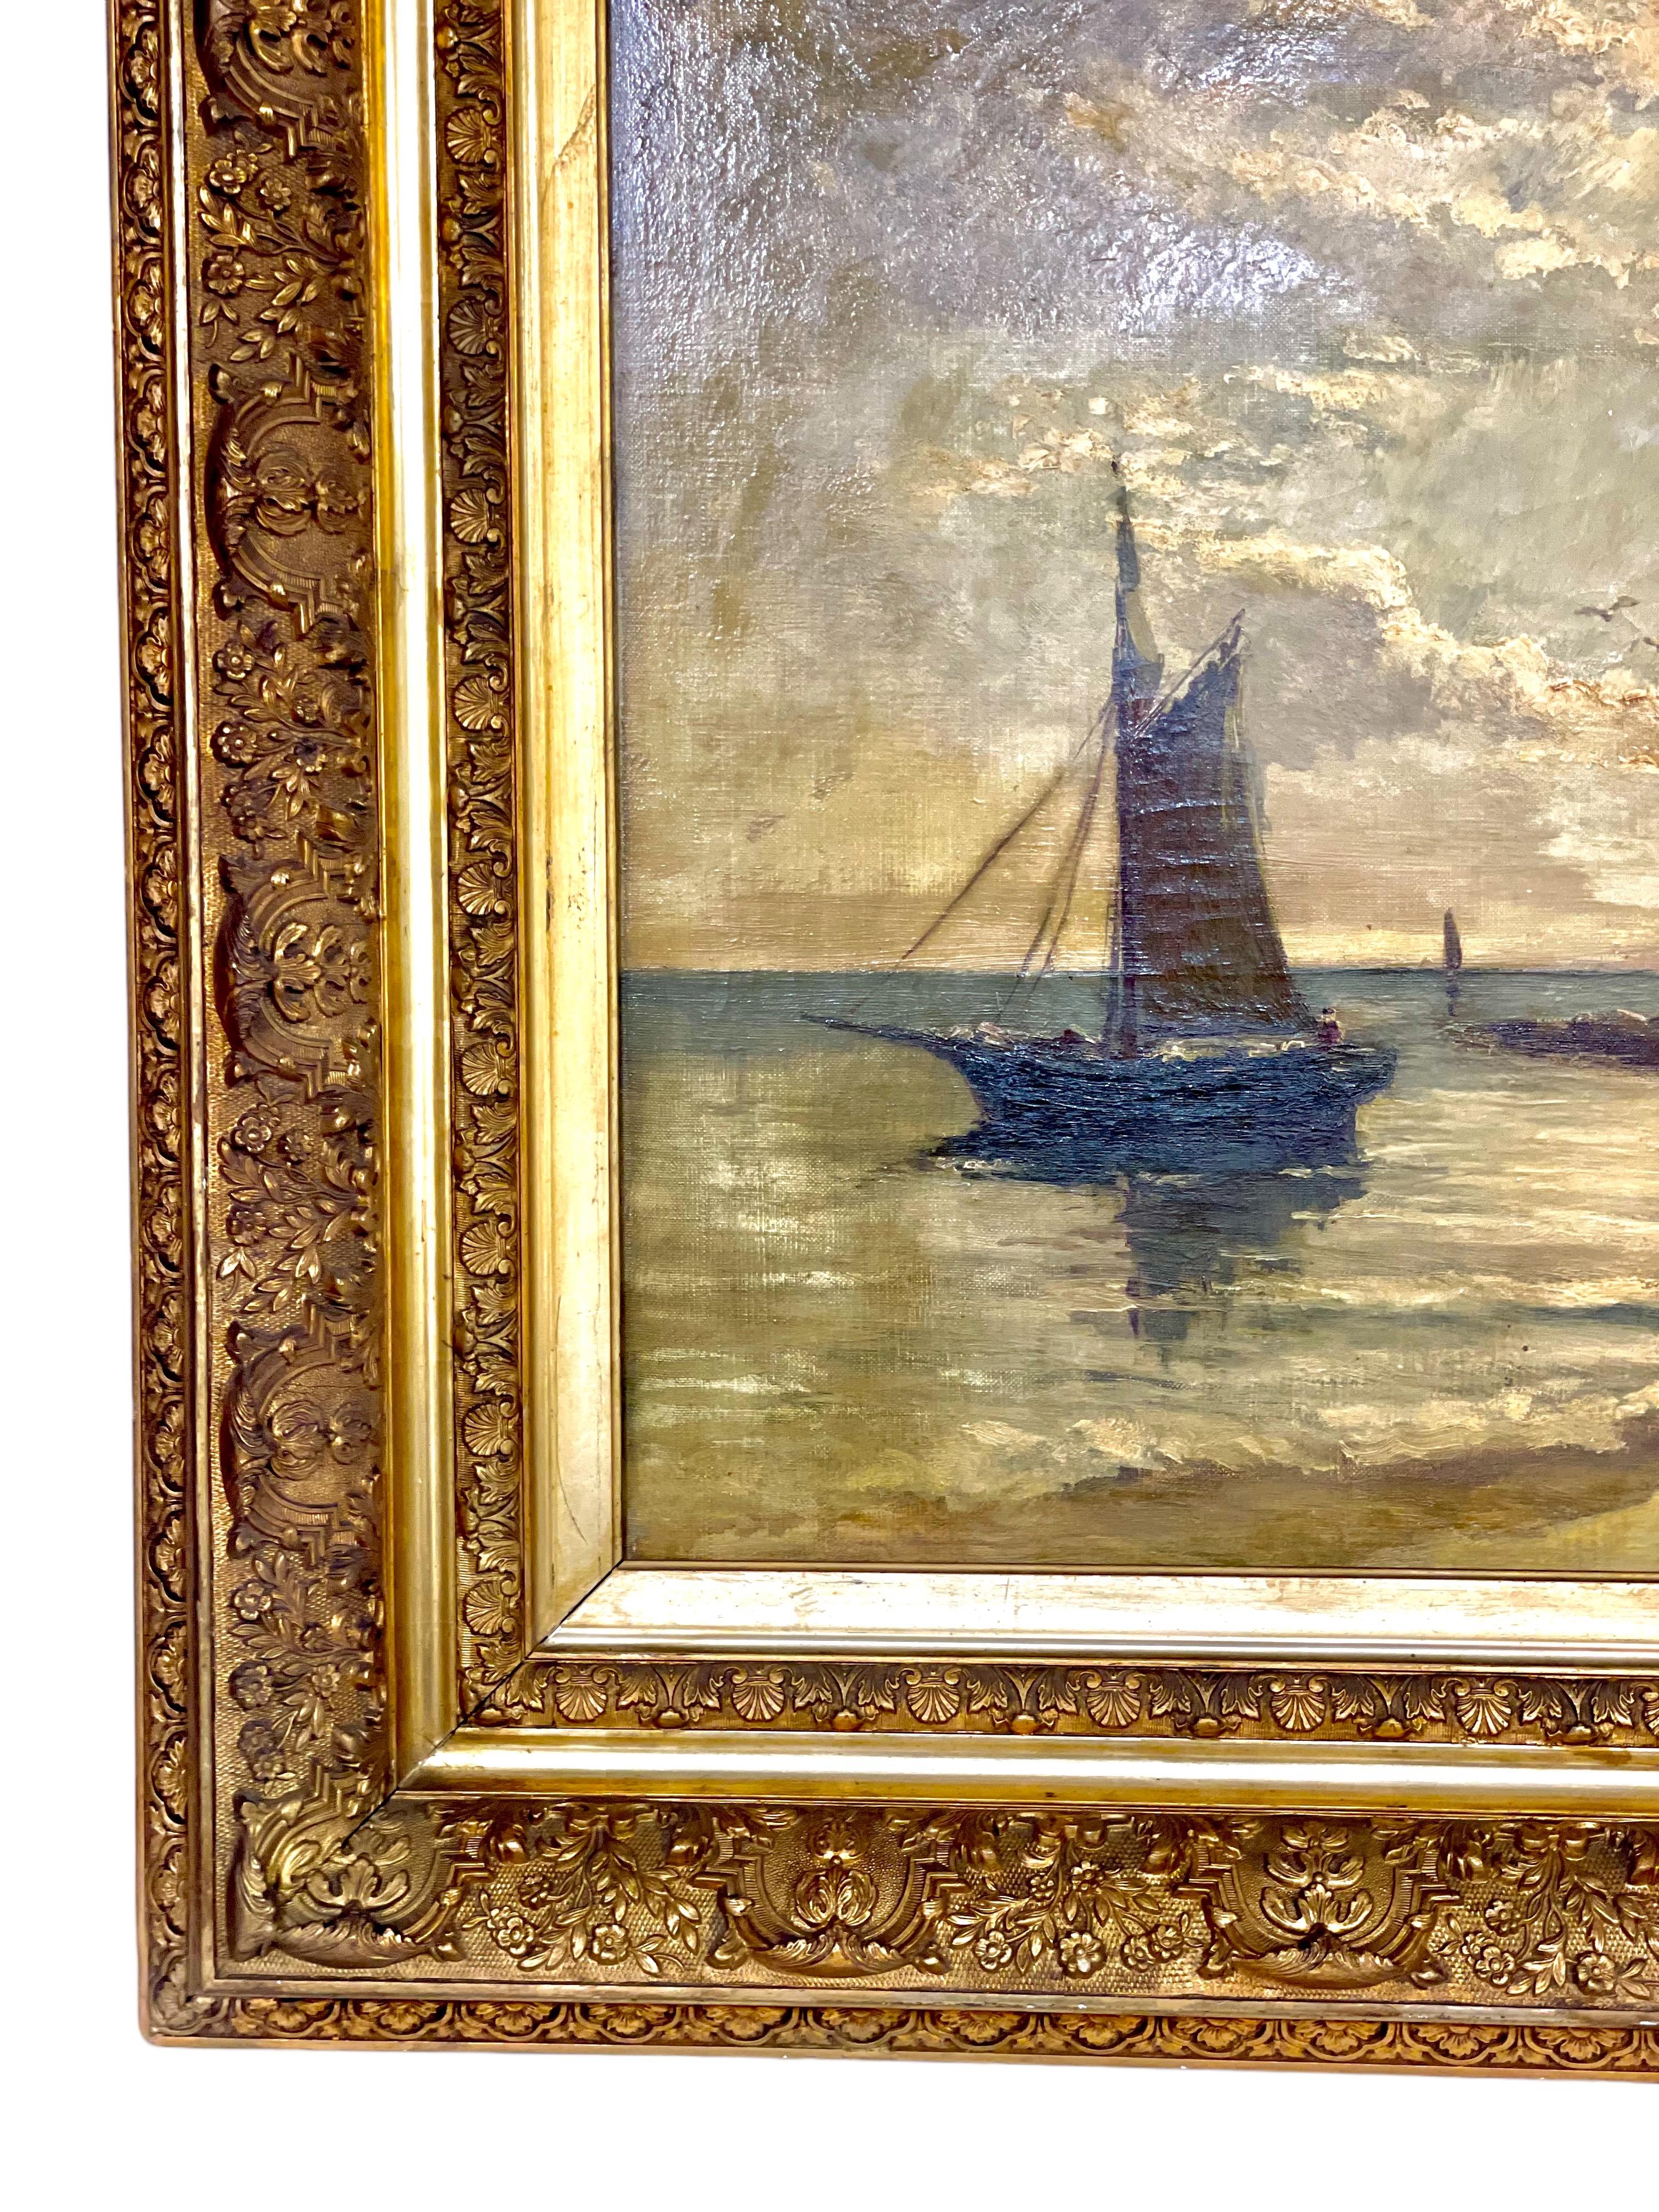 Französisches Öl auf Leinwand von Charles de Saint Geran (1884- 1963). Um 1930 gemalt, fängt dieses großartige Kunstwerk einen seltenen Moment der Stille und Ruhe auf dem Wasser ein, als zwei kleine Ruderboote ihre Meeresfrüchte an das felsige Ufer